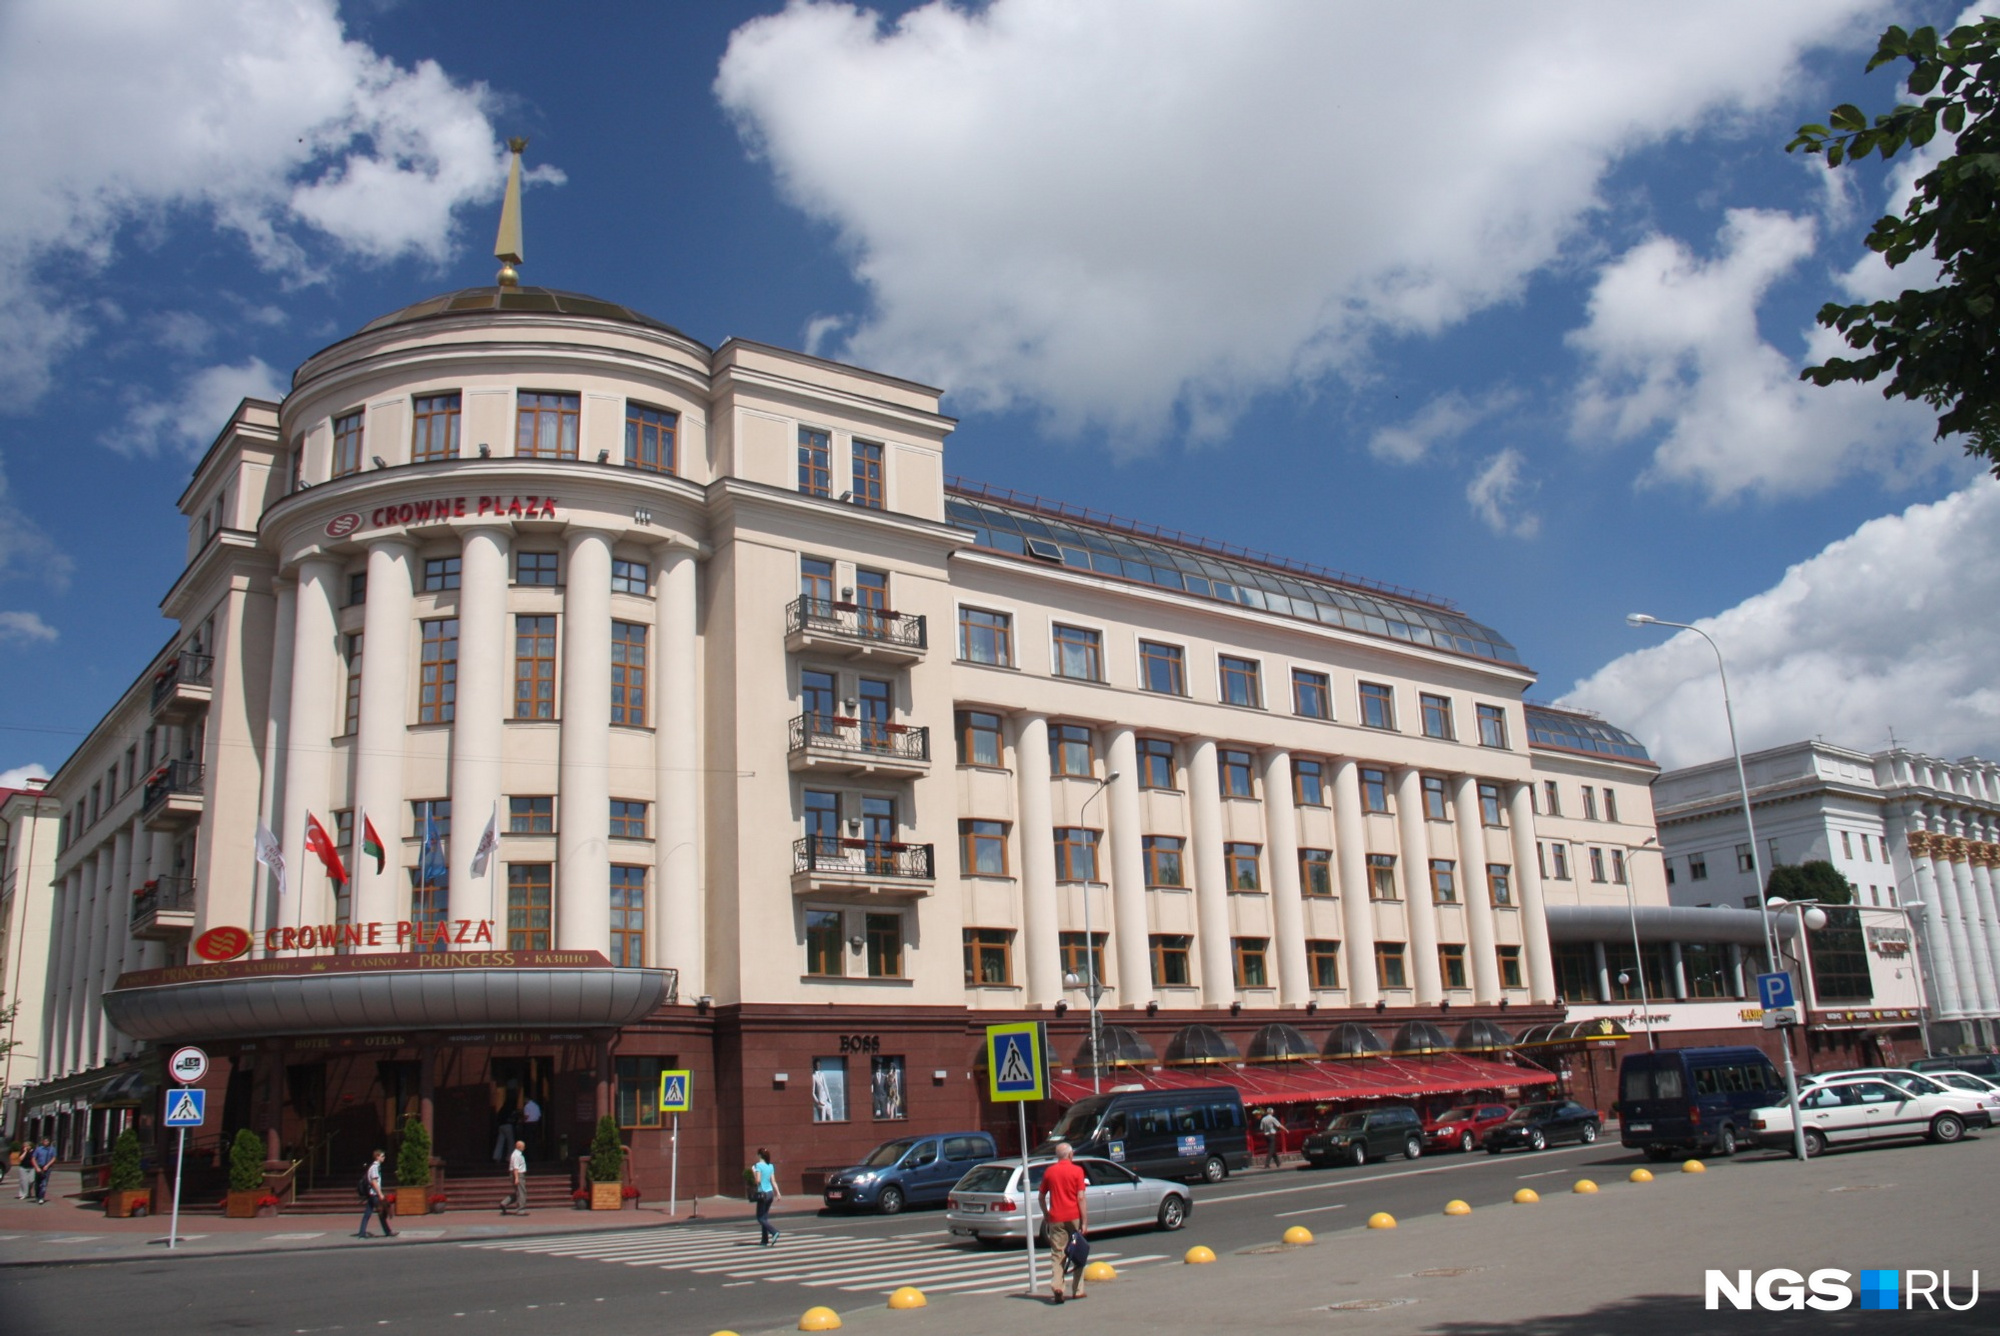 Пятизвёздочный отель Crowne Plaza — цены на номера начинаются здесь с 7800 рублей